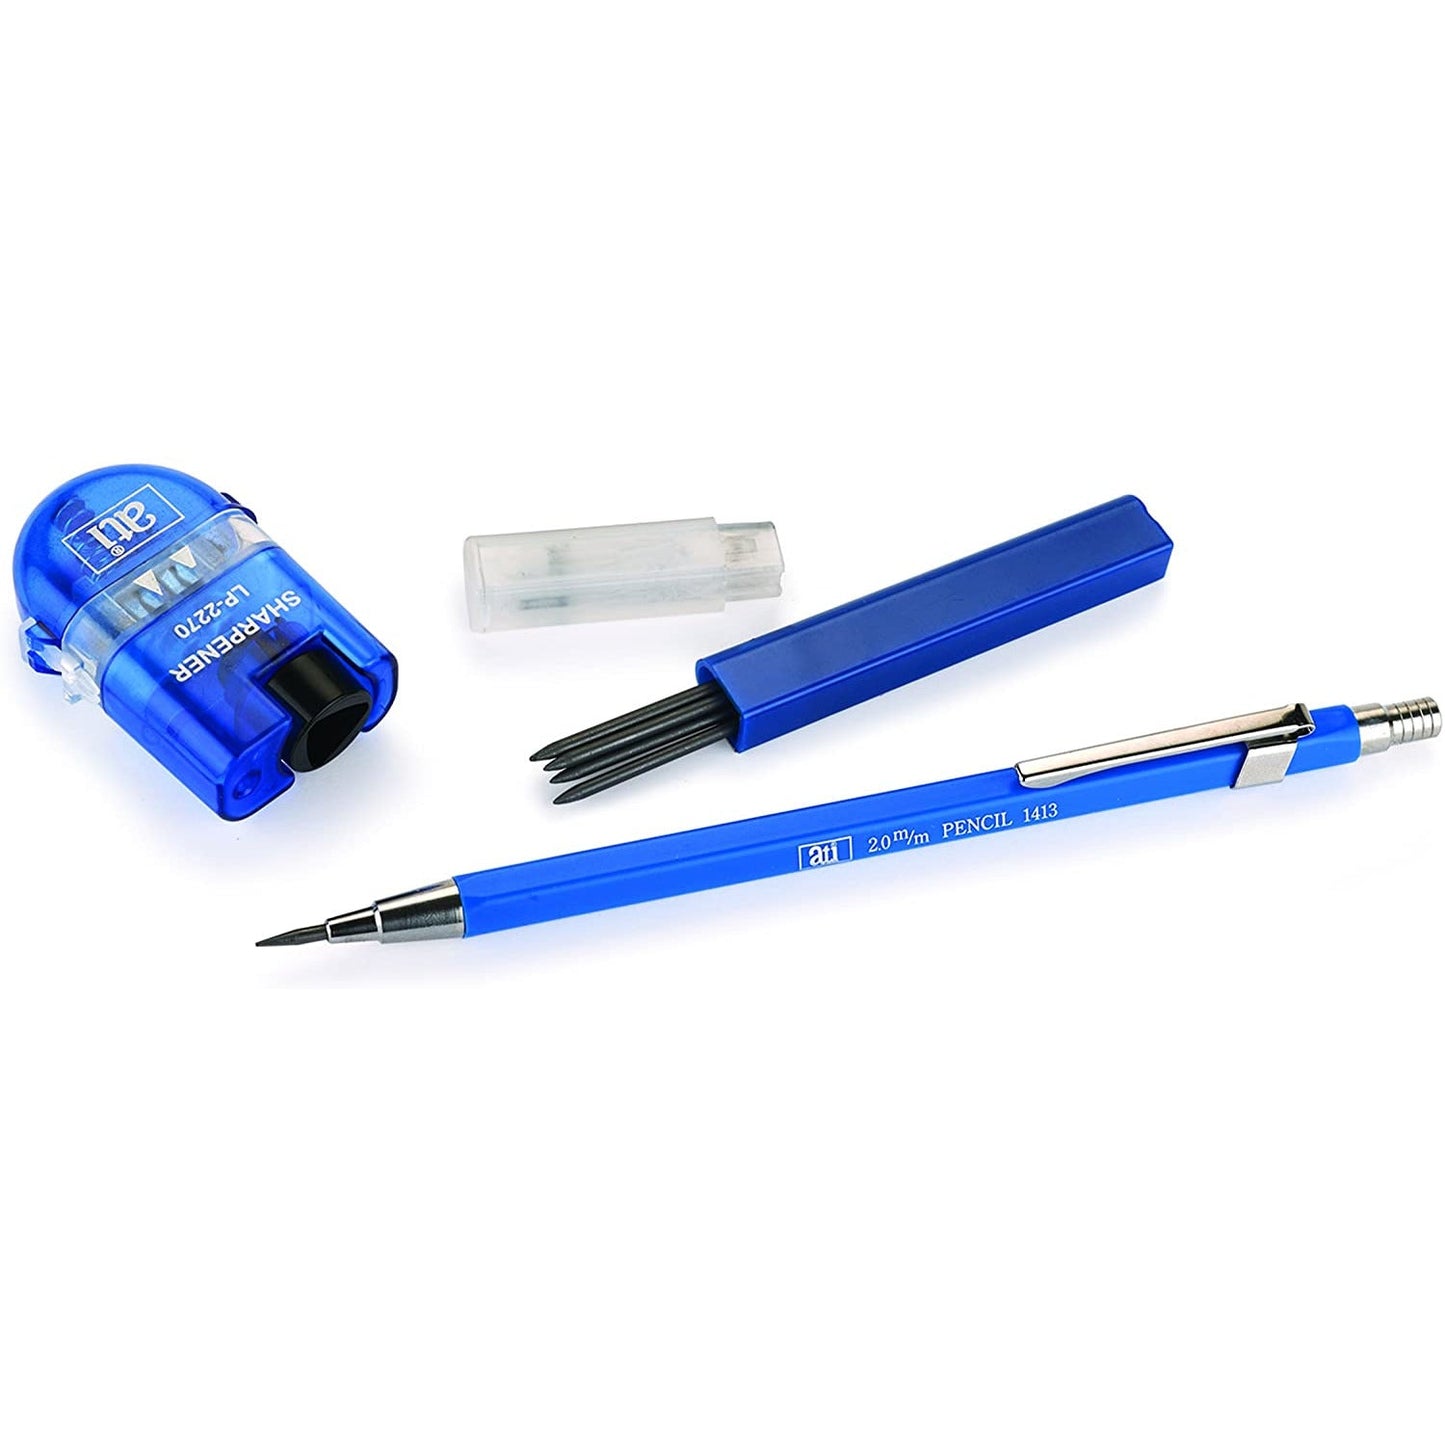 ATI 2 mm Clutch Pencil Sharpener with Bin